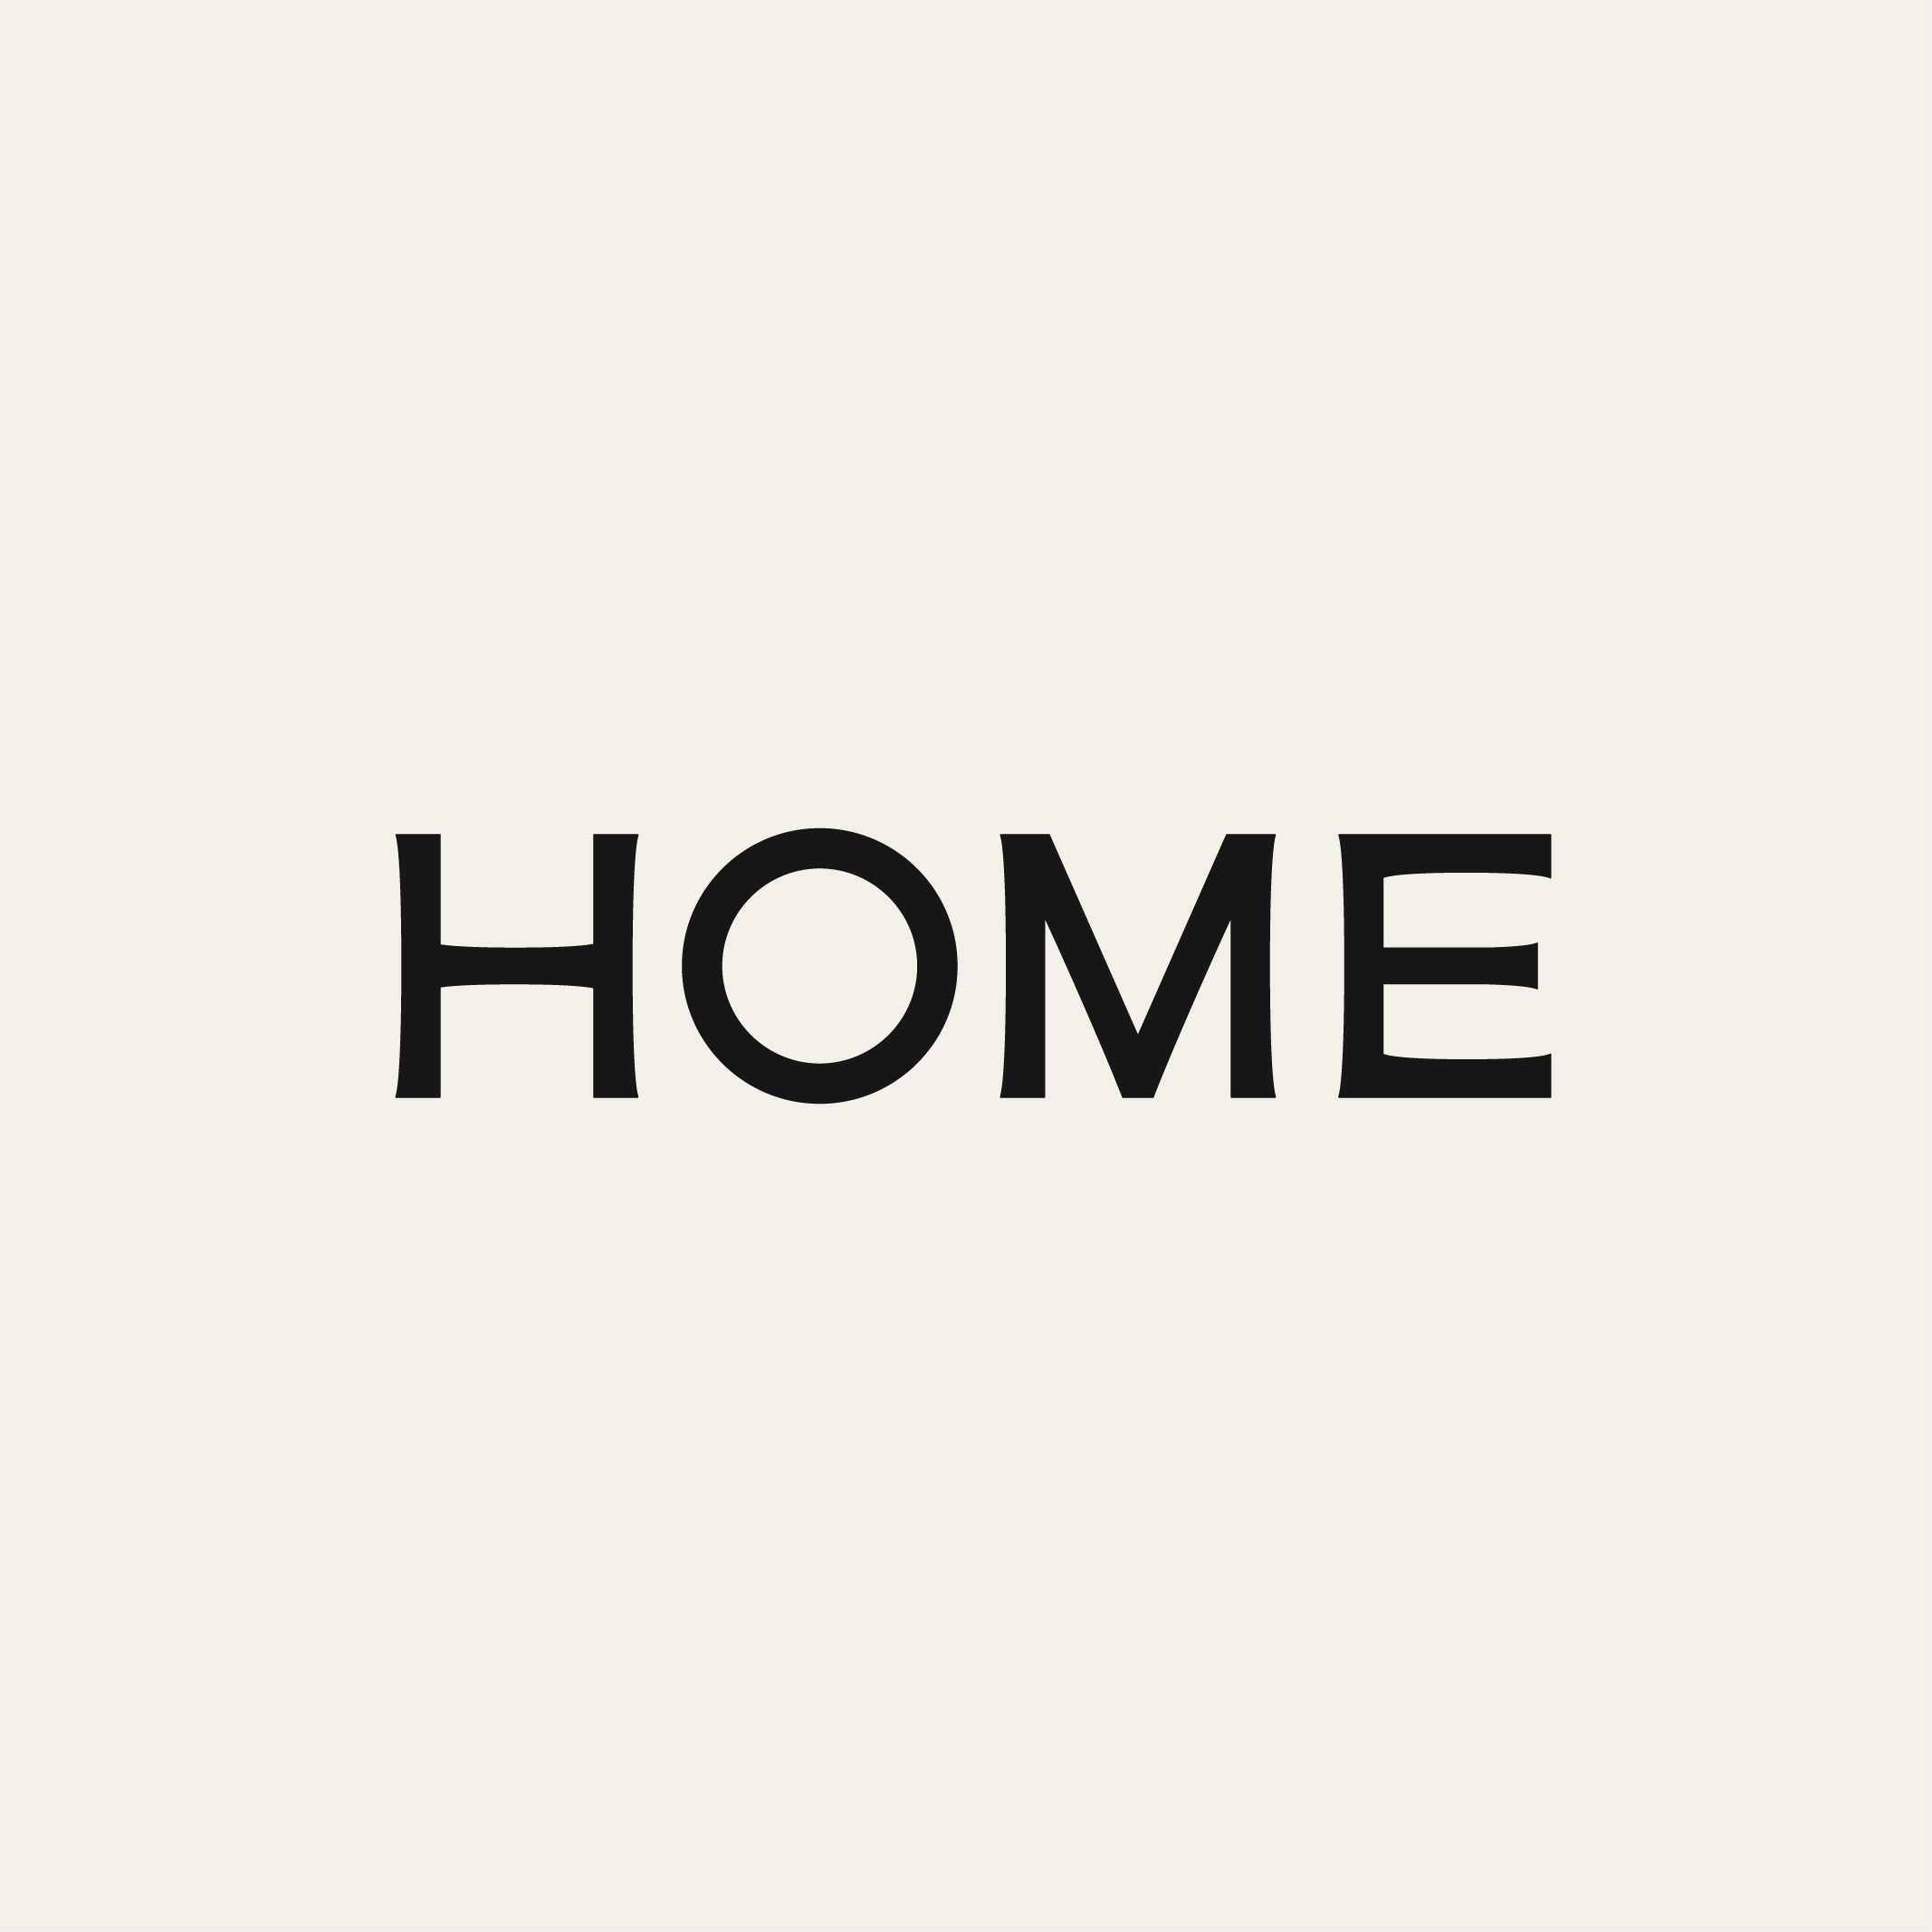 HOME [shophomela.com]